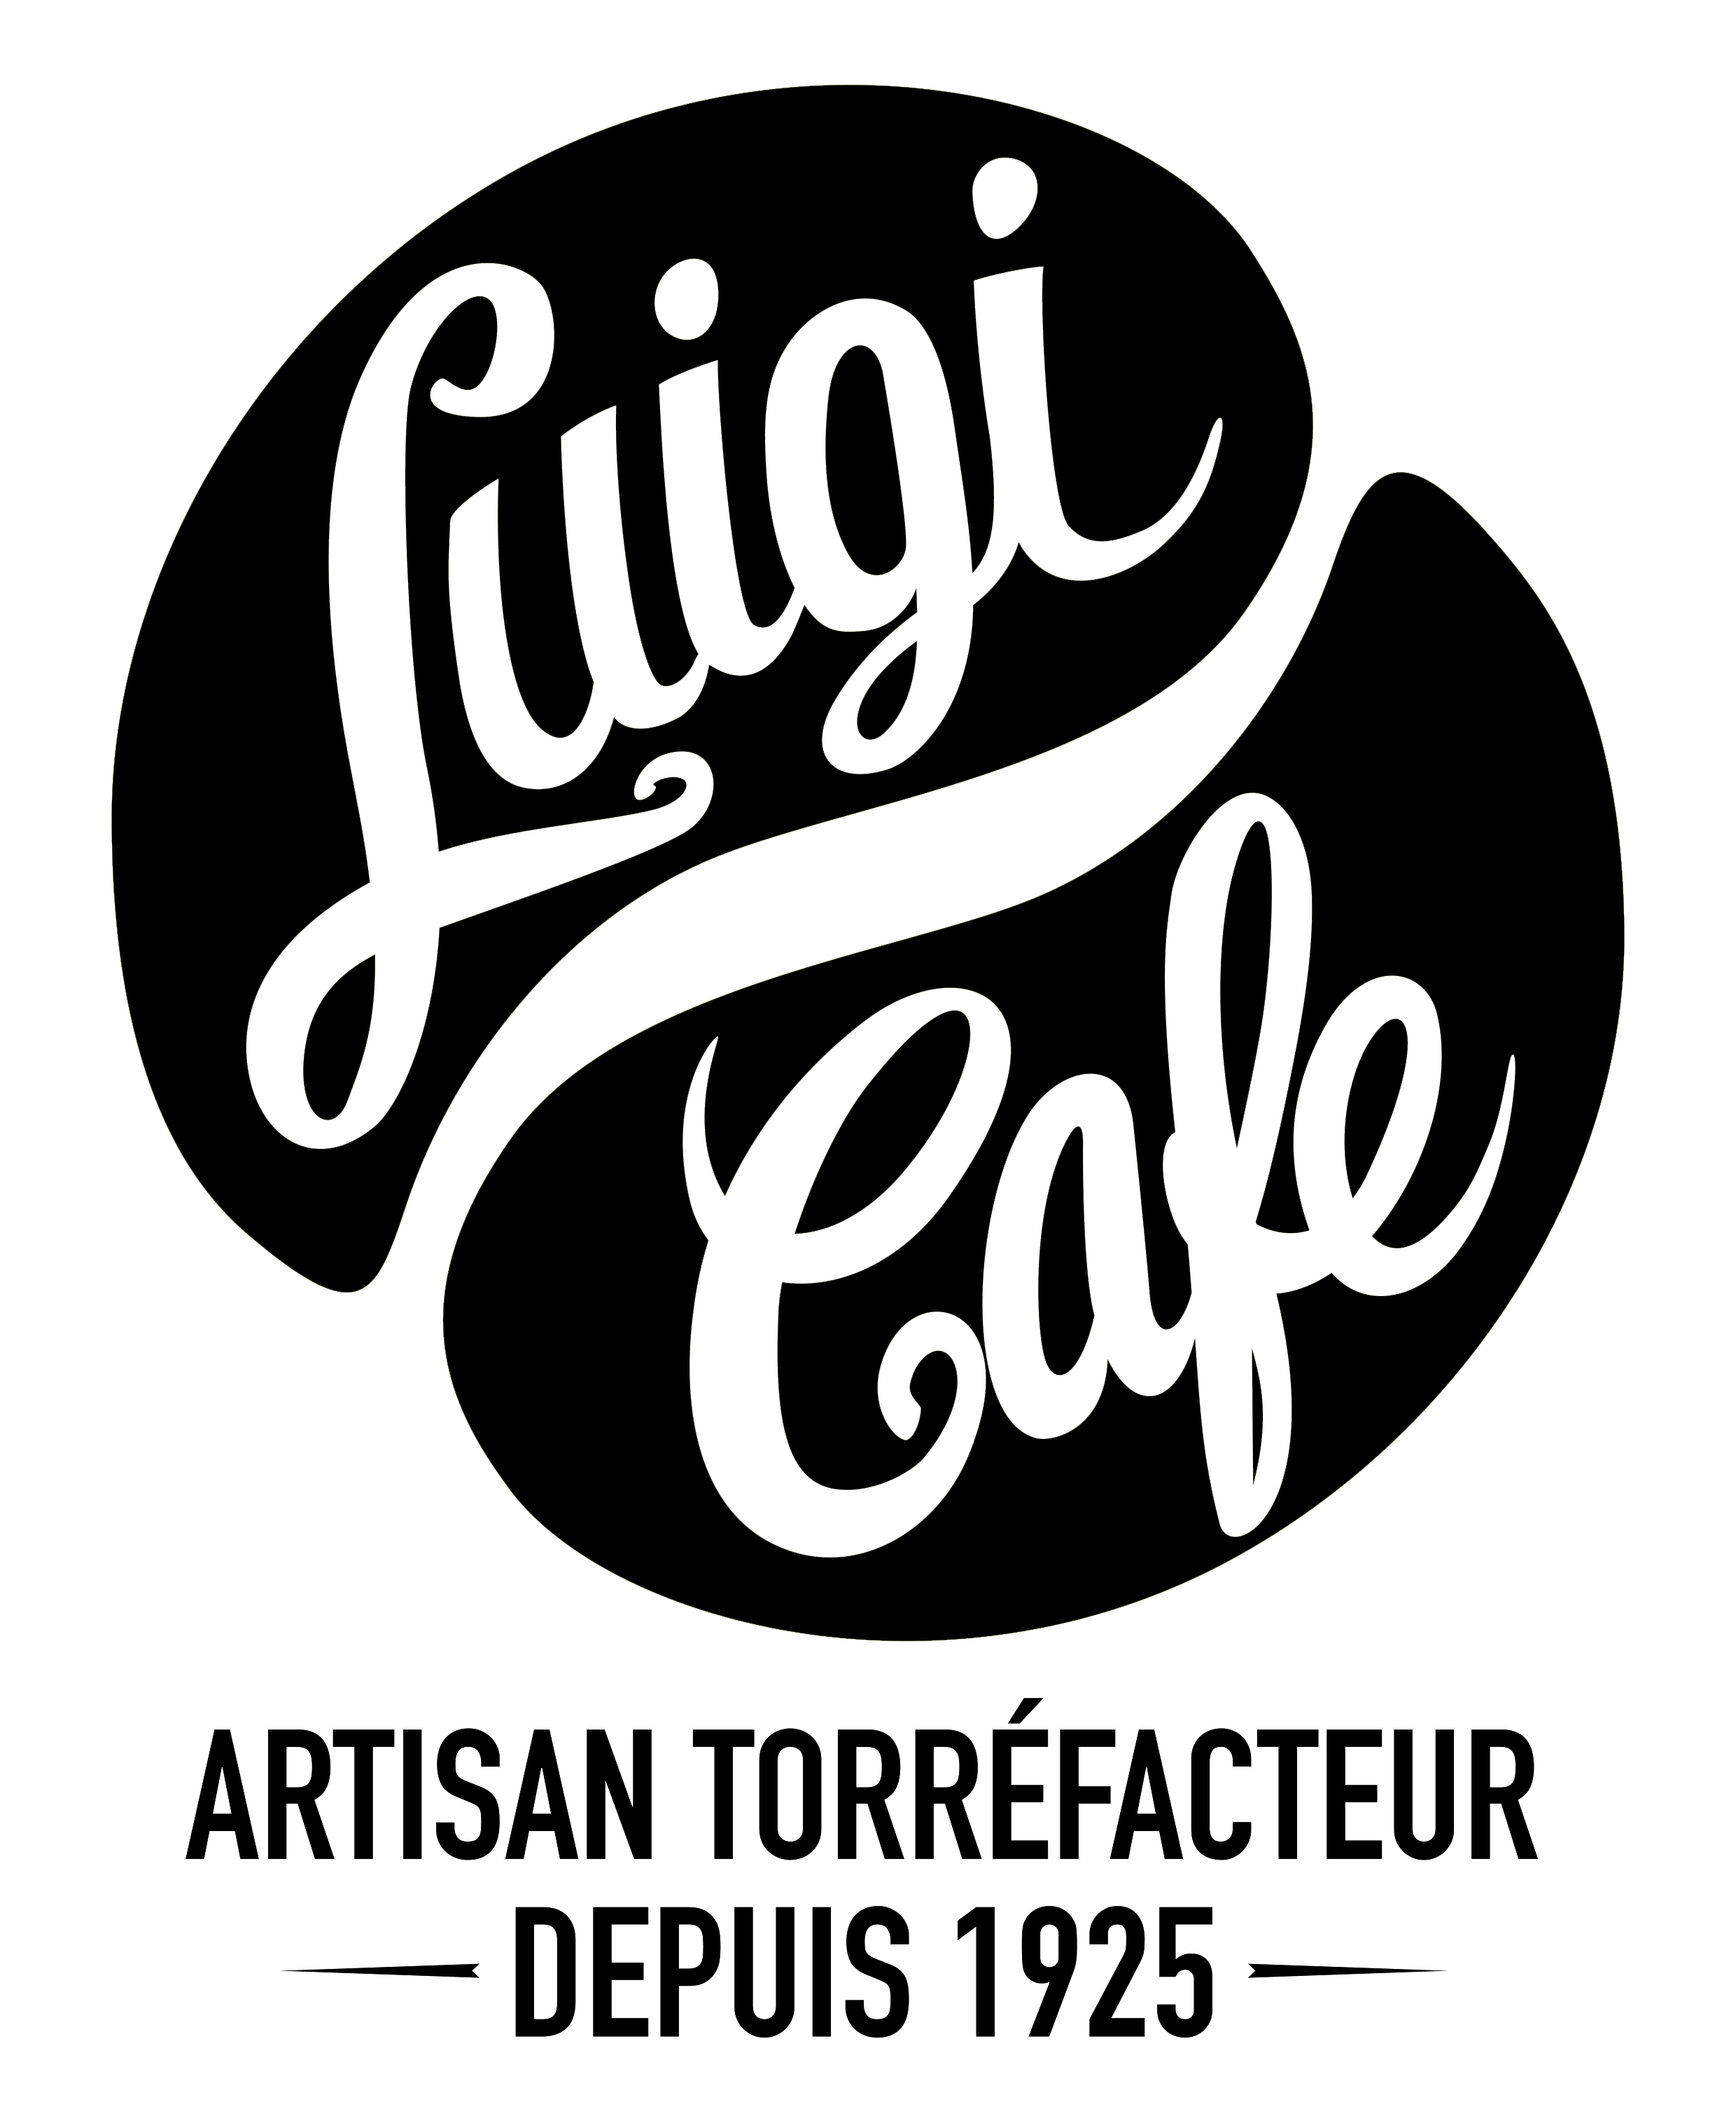 Luigi Café Artisan Torréfacteur Bordeaux